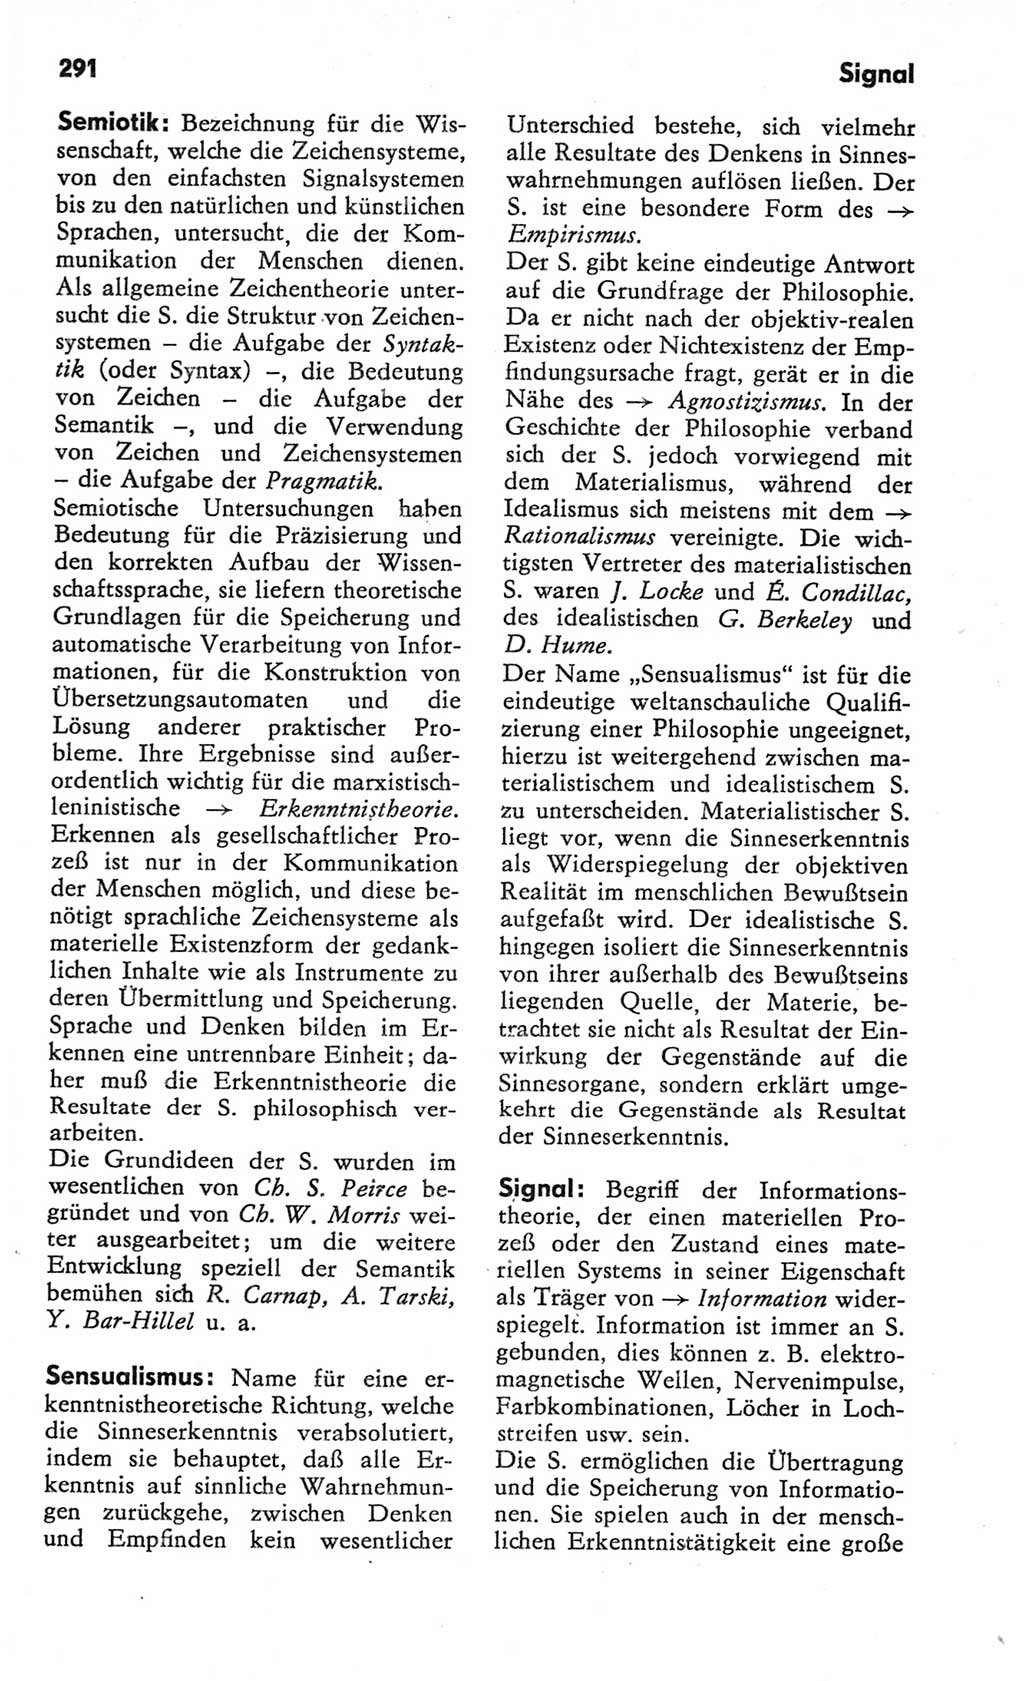 Kleines Wörterbuch der marxistisch-leninistischen Philosophie [Deutsche Demokratische Republik (DDR)] 1982, Seite 291 (Kl. Wb. ML Phil. DDR 1982, S. 291)